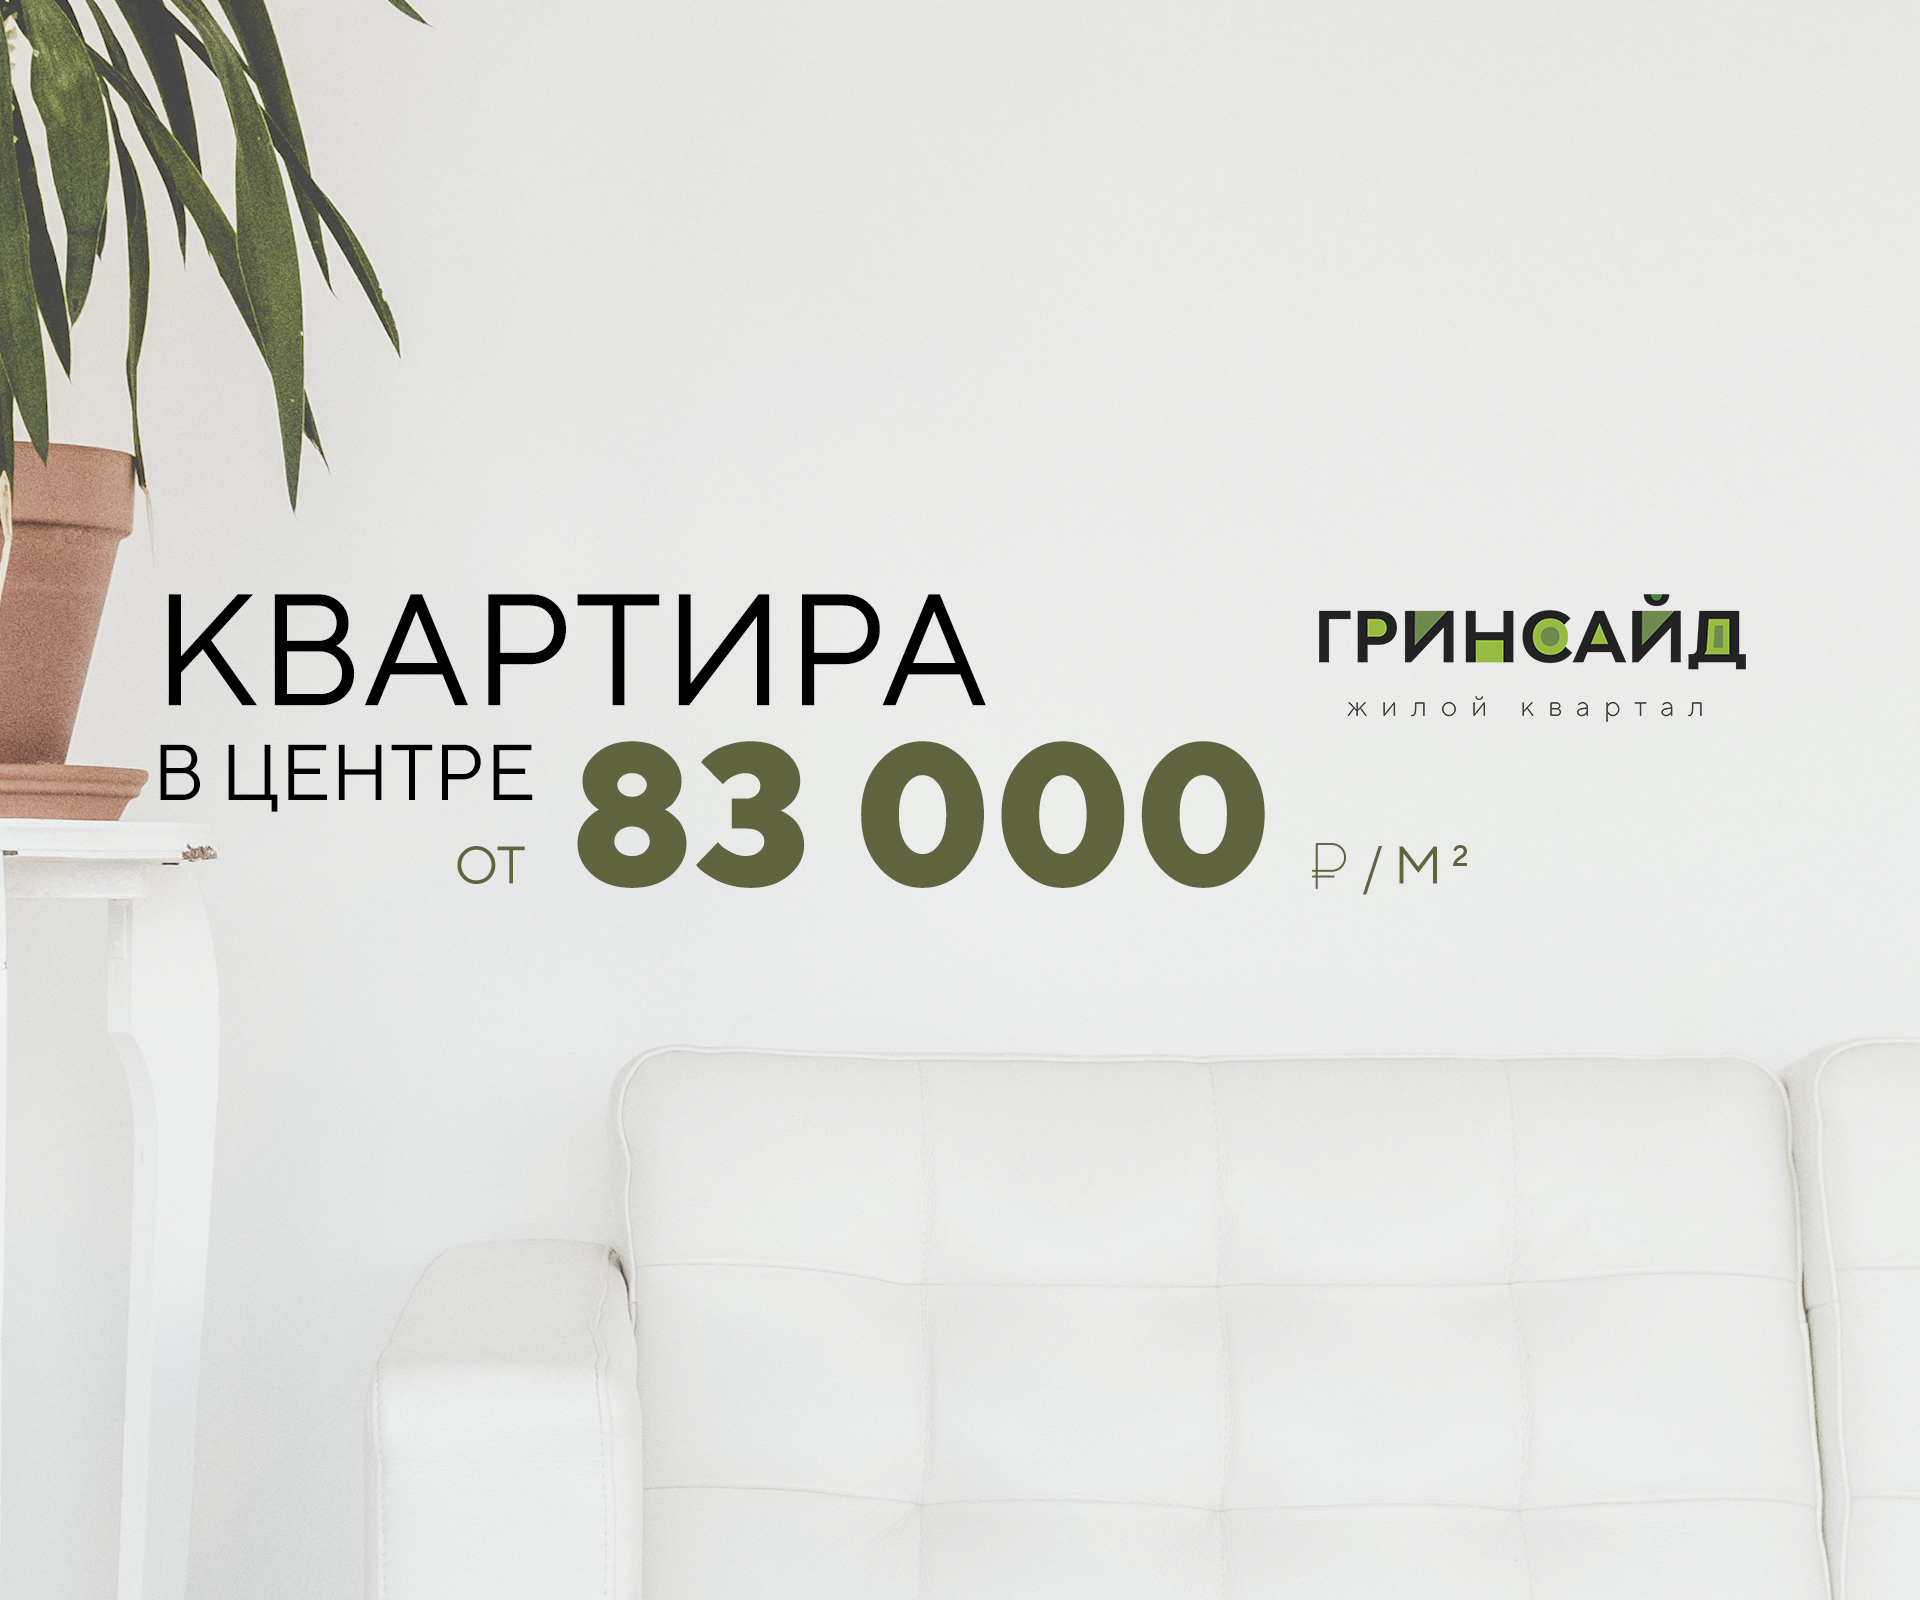 ЖК «Гринсайд»: квартиры в центре от 83 тыс.руб/кв.м.